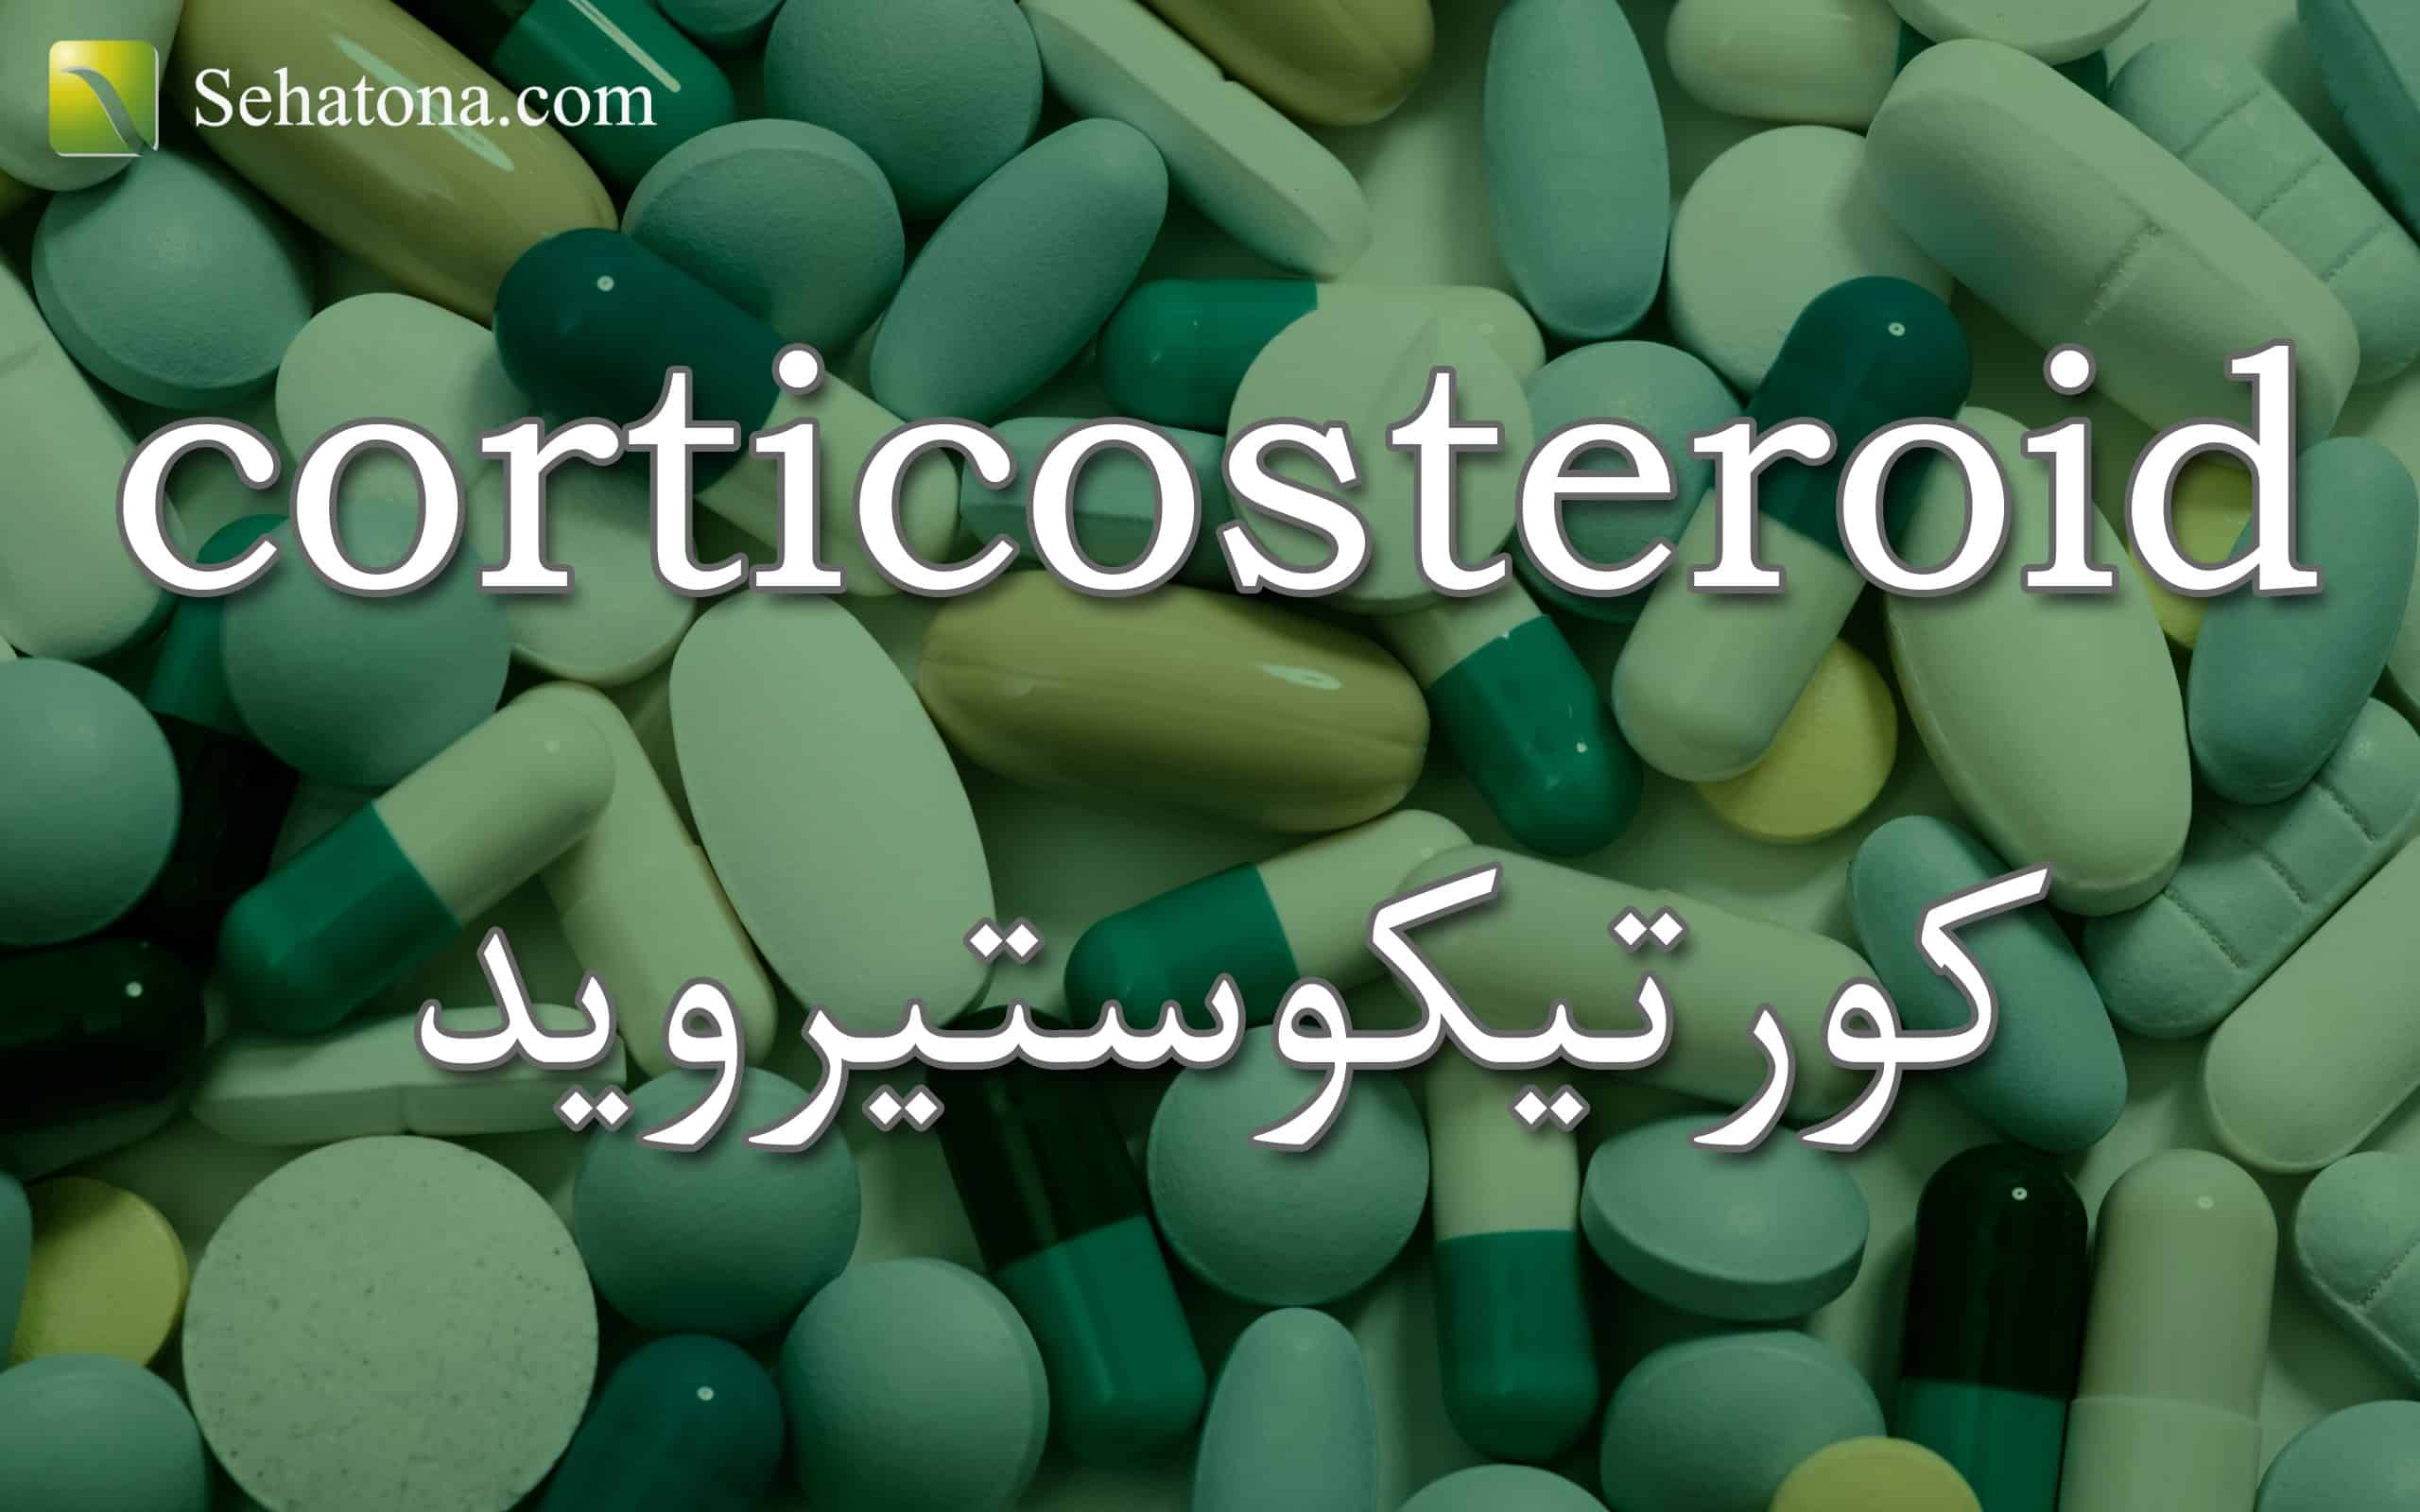 corticosteroid